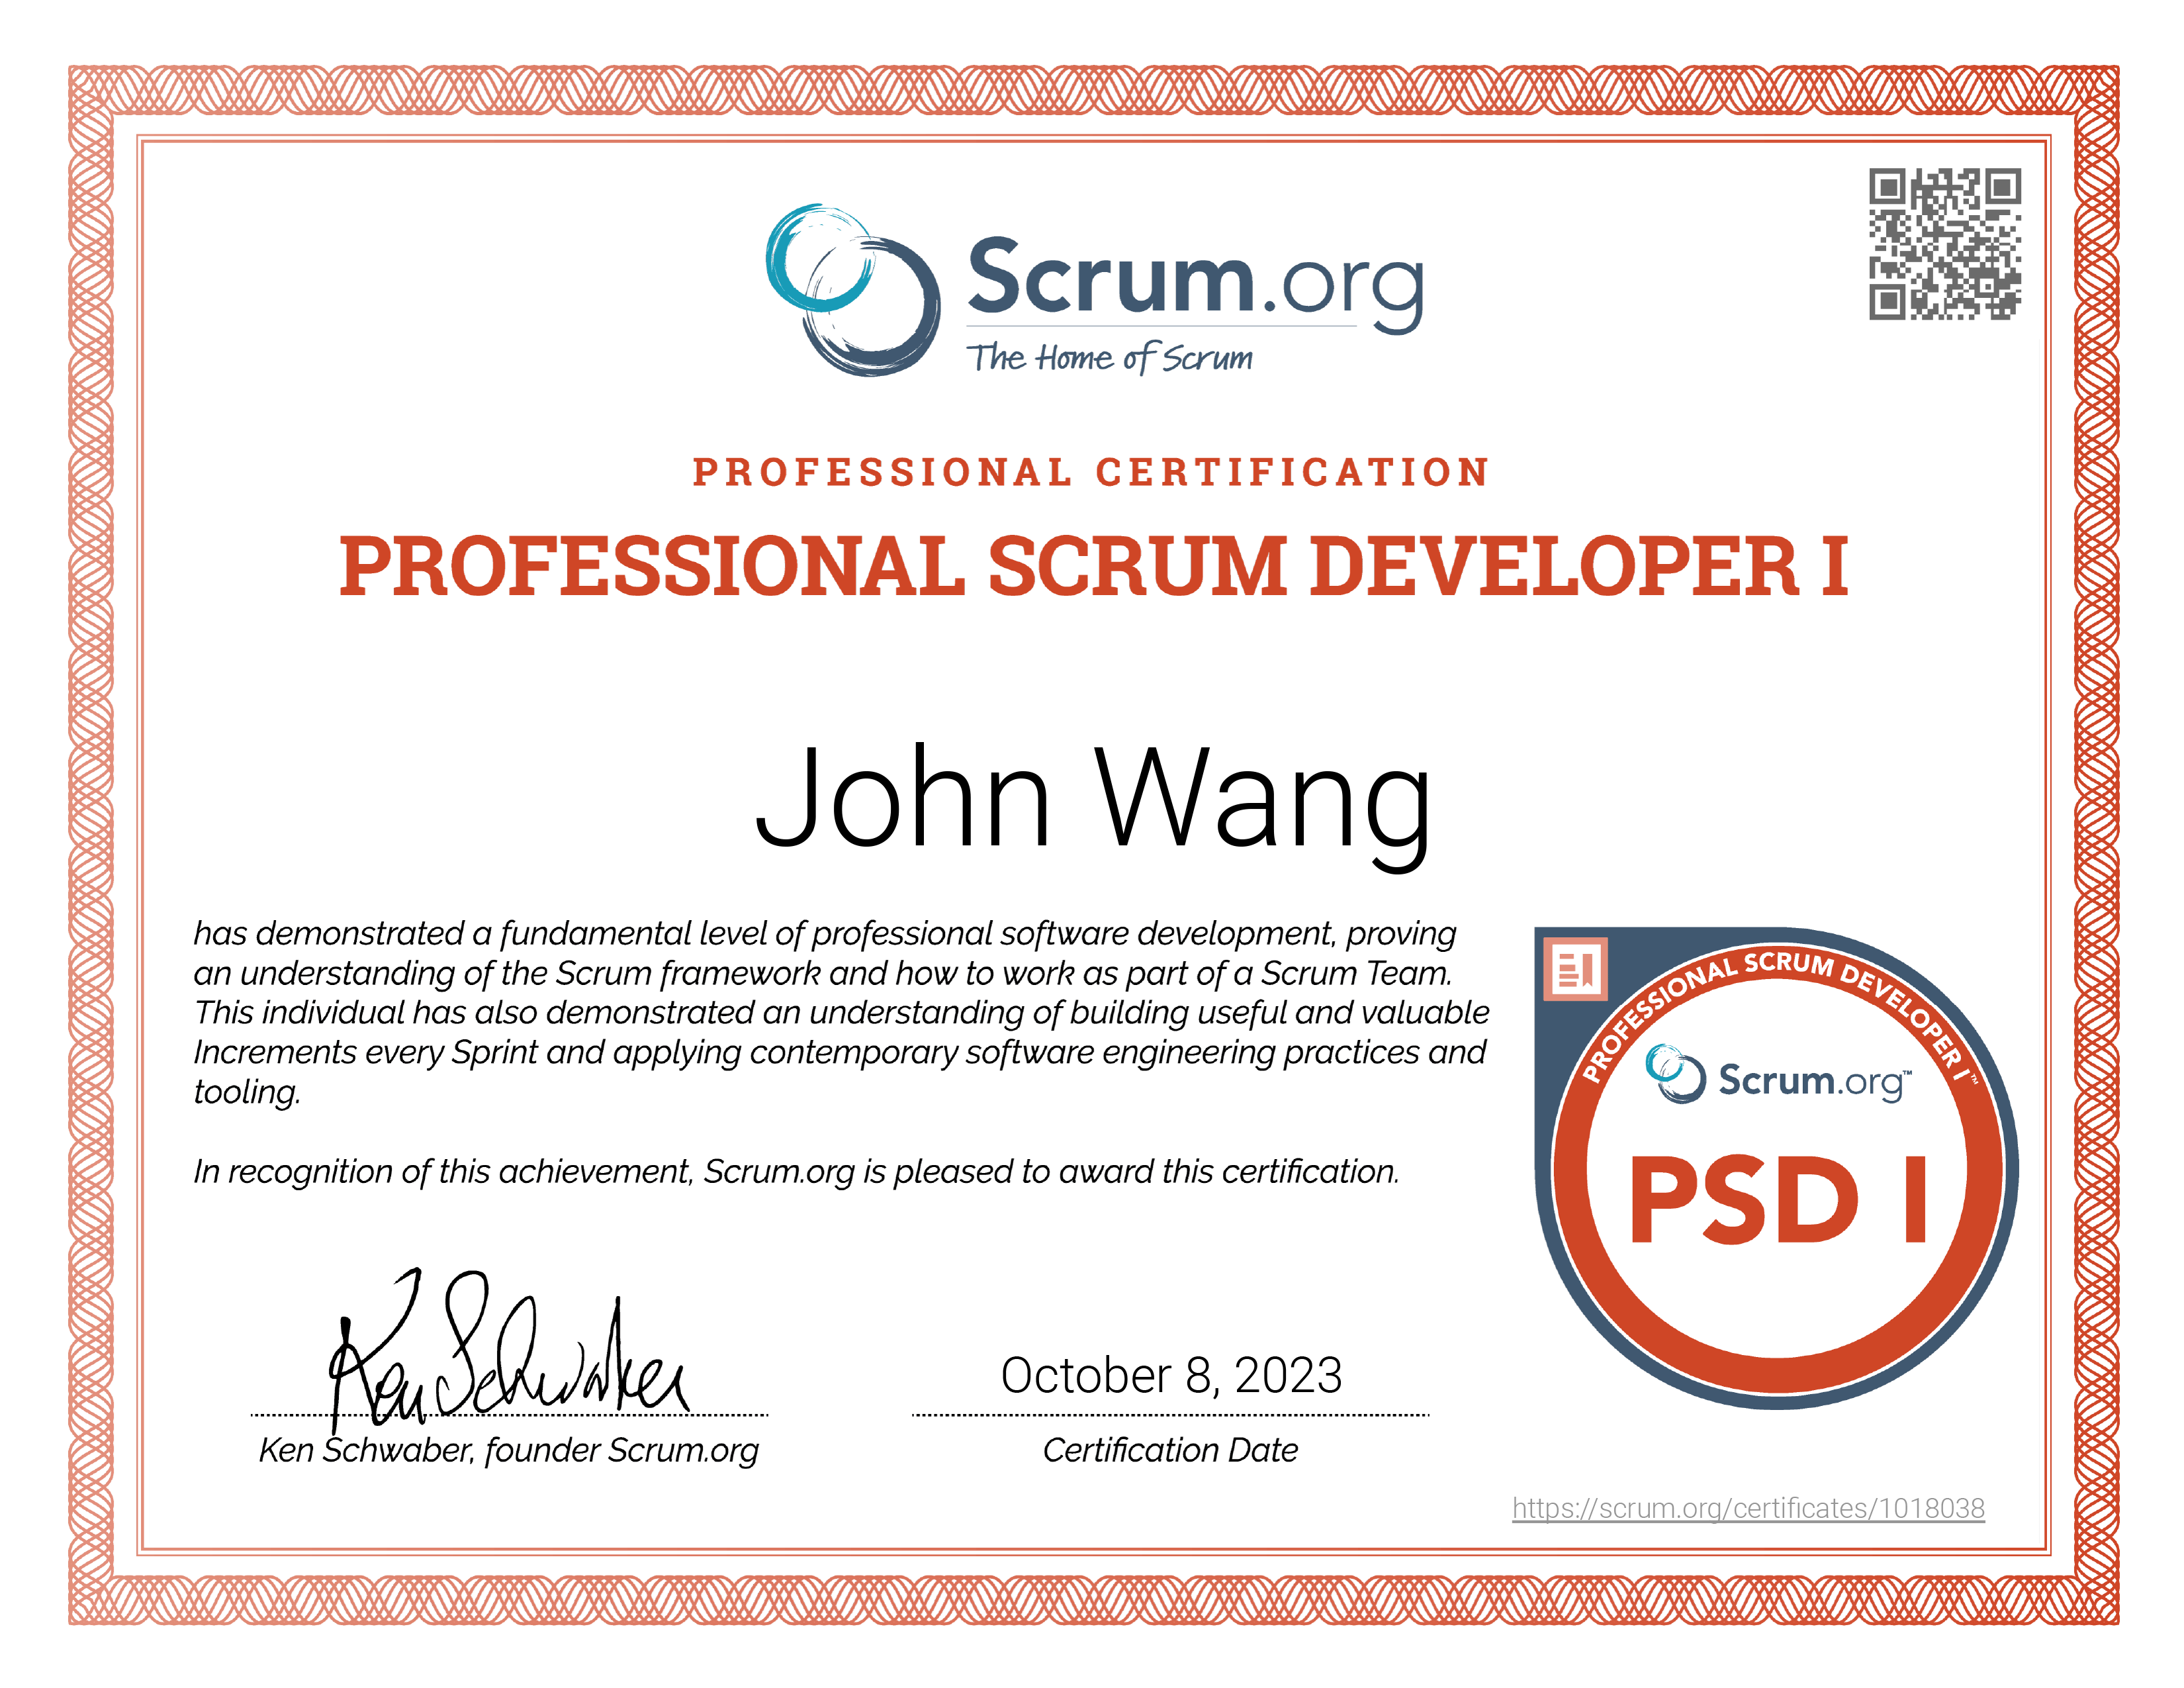 John's Professional Scrum Developer (PSD) from Scrum.org